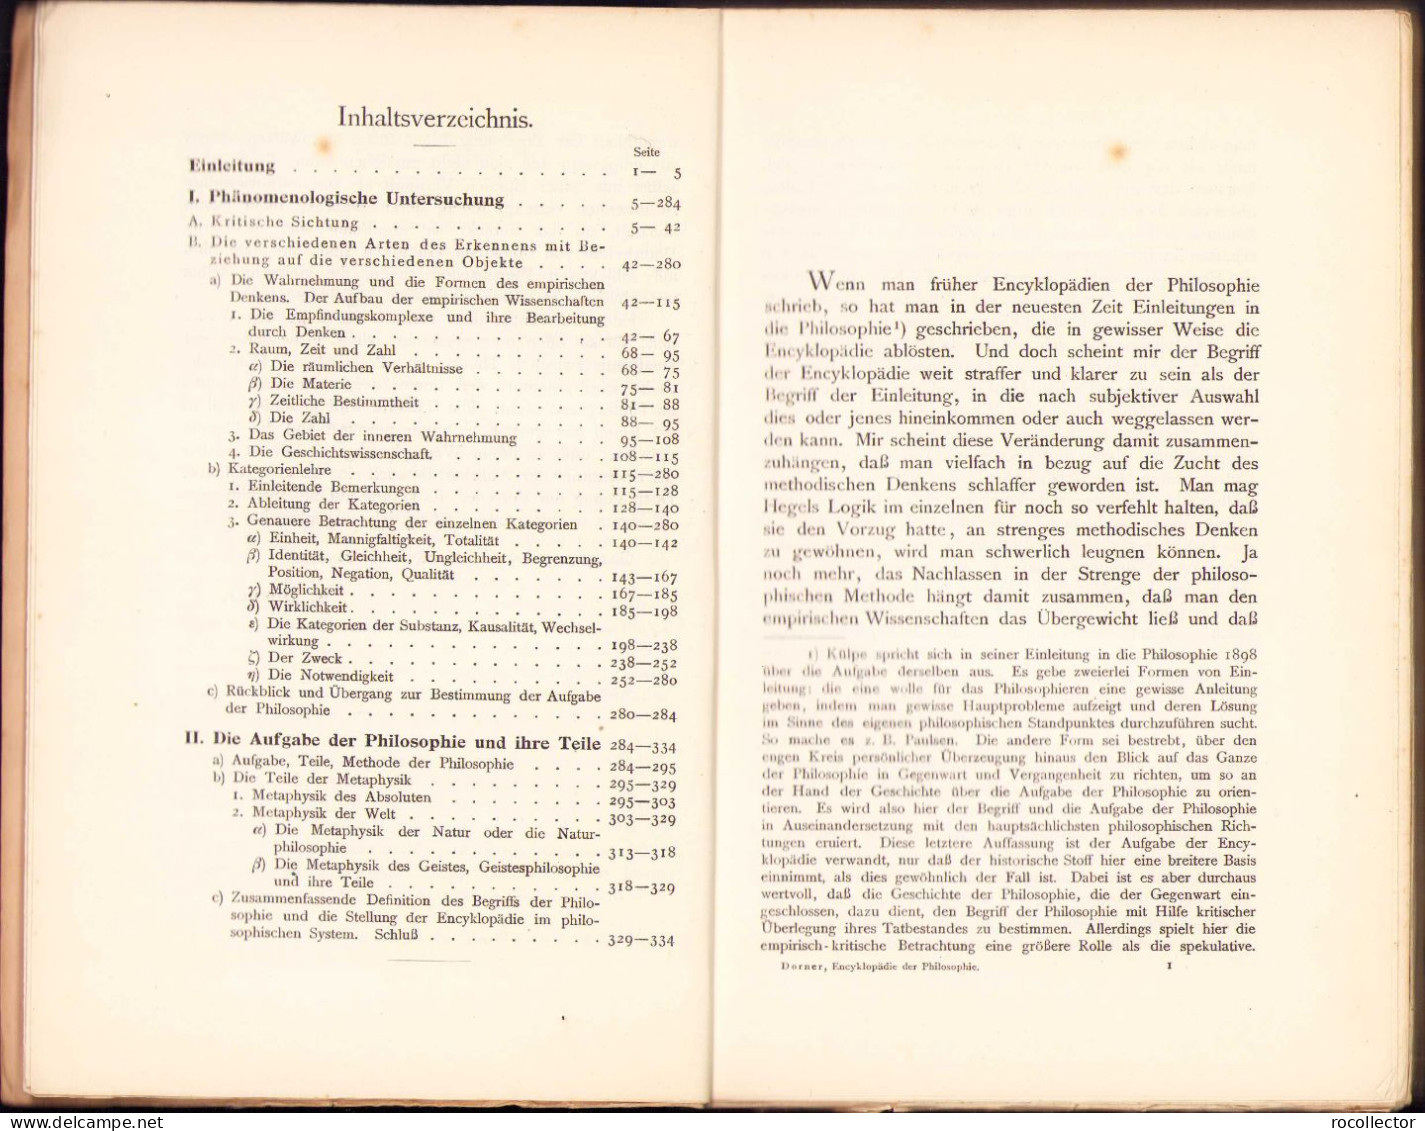 Encyklopädie Der Philosophie Mit Besonderer Berücksichtigung Der Erkenntnistheorie Und Kategorienlehre Von A Dorner 1910 - Livres Anciens